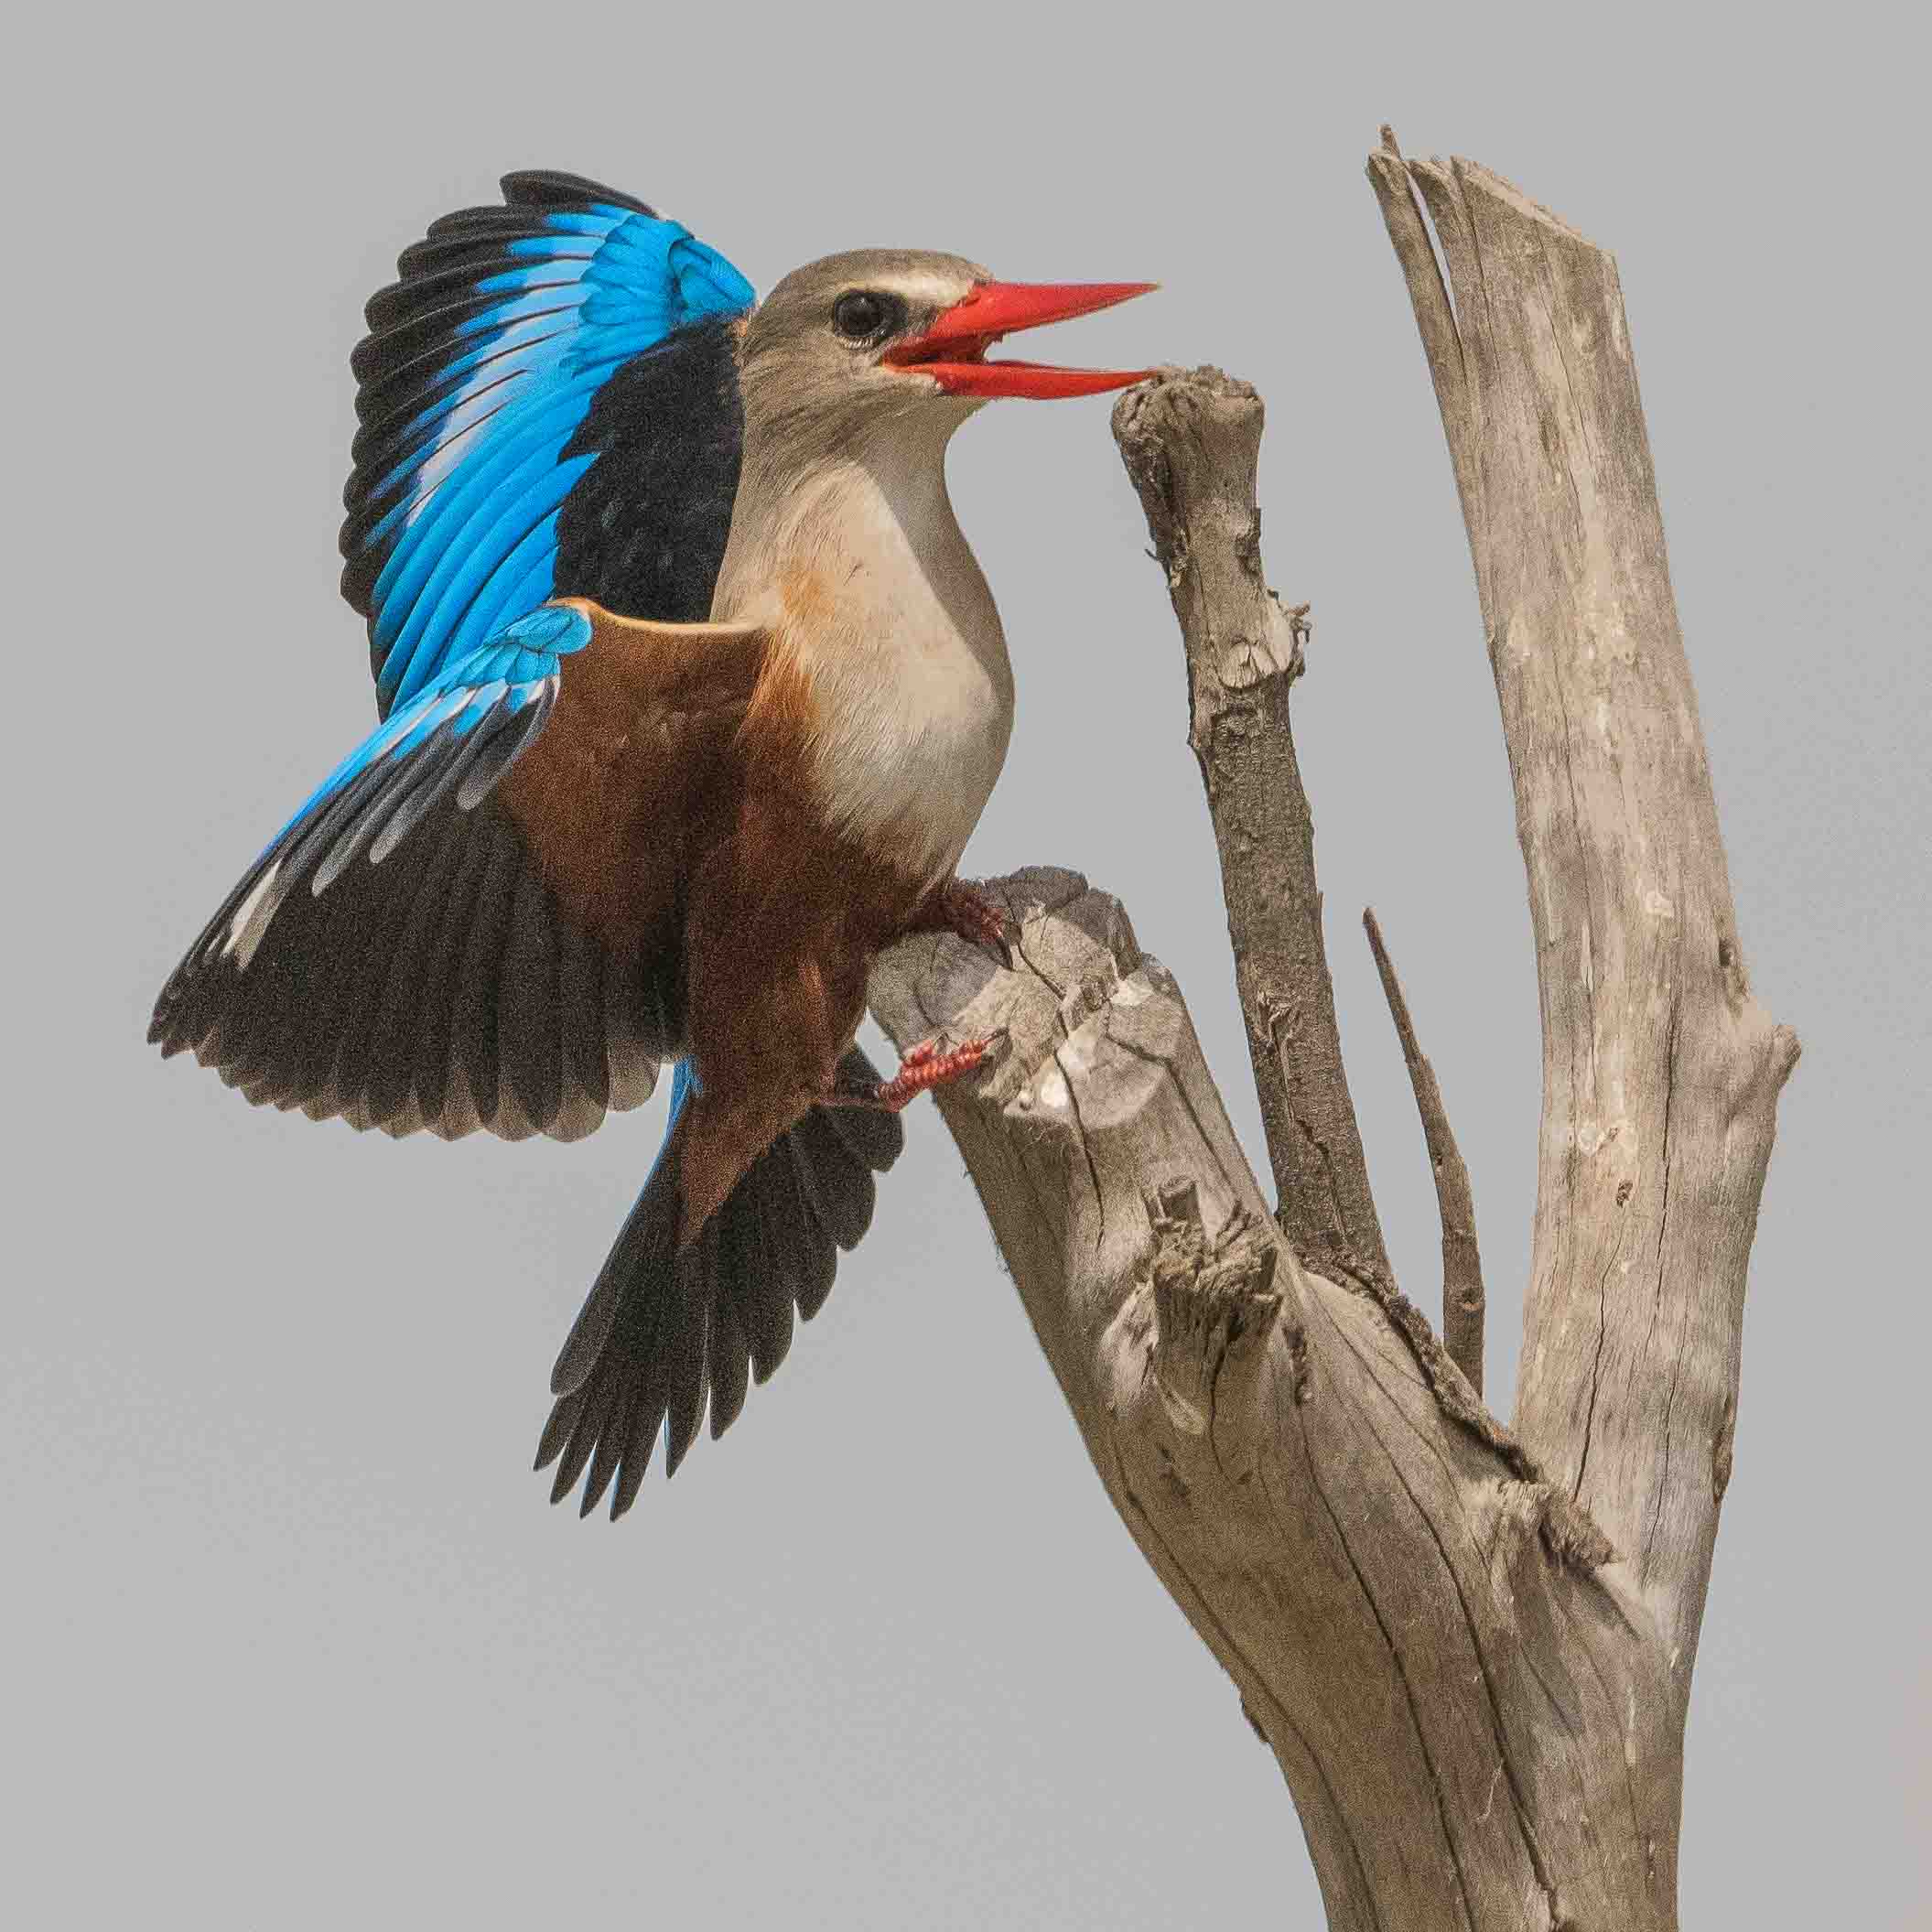 Martin-chasseur à tête grise (Grey-headed kingfisher, Halcyon leucocephala), mâle paradant, Technopôle de Pikine, Dakar, Sénégal.